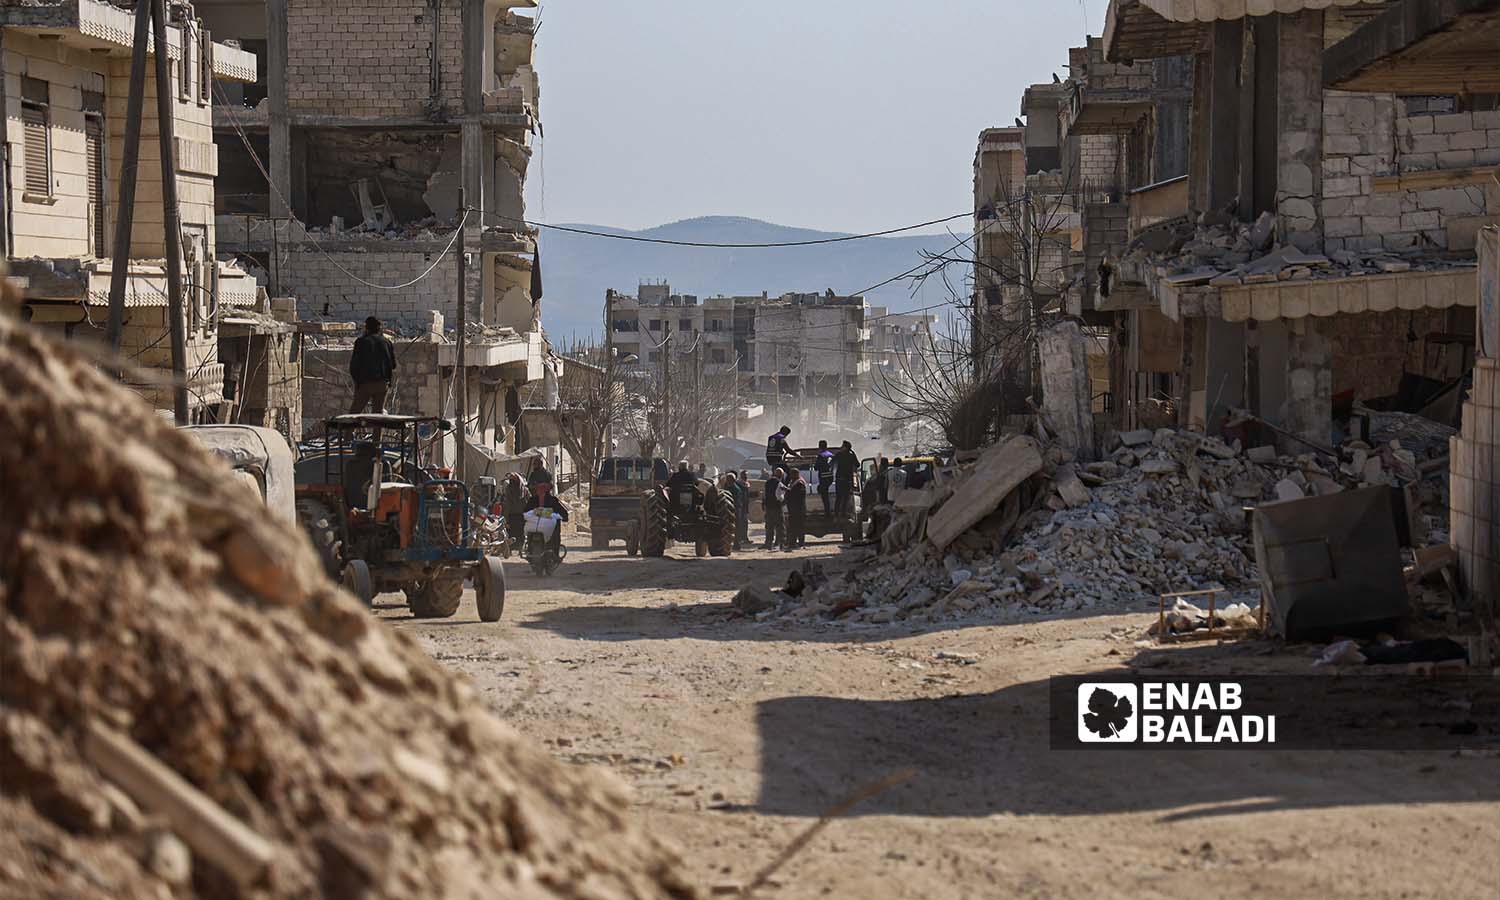 شوارع مدينة جنديرس بريف حلب بعد الزلزال الذي ضرب شمالي غربي سوريا - 24شباط 2023 (/ أمير خربطلي)